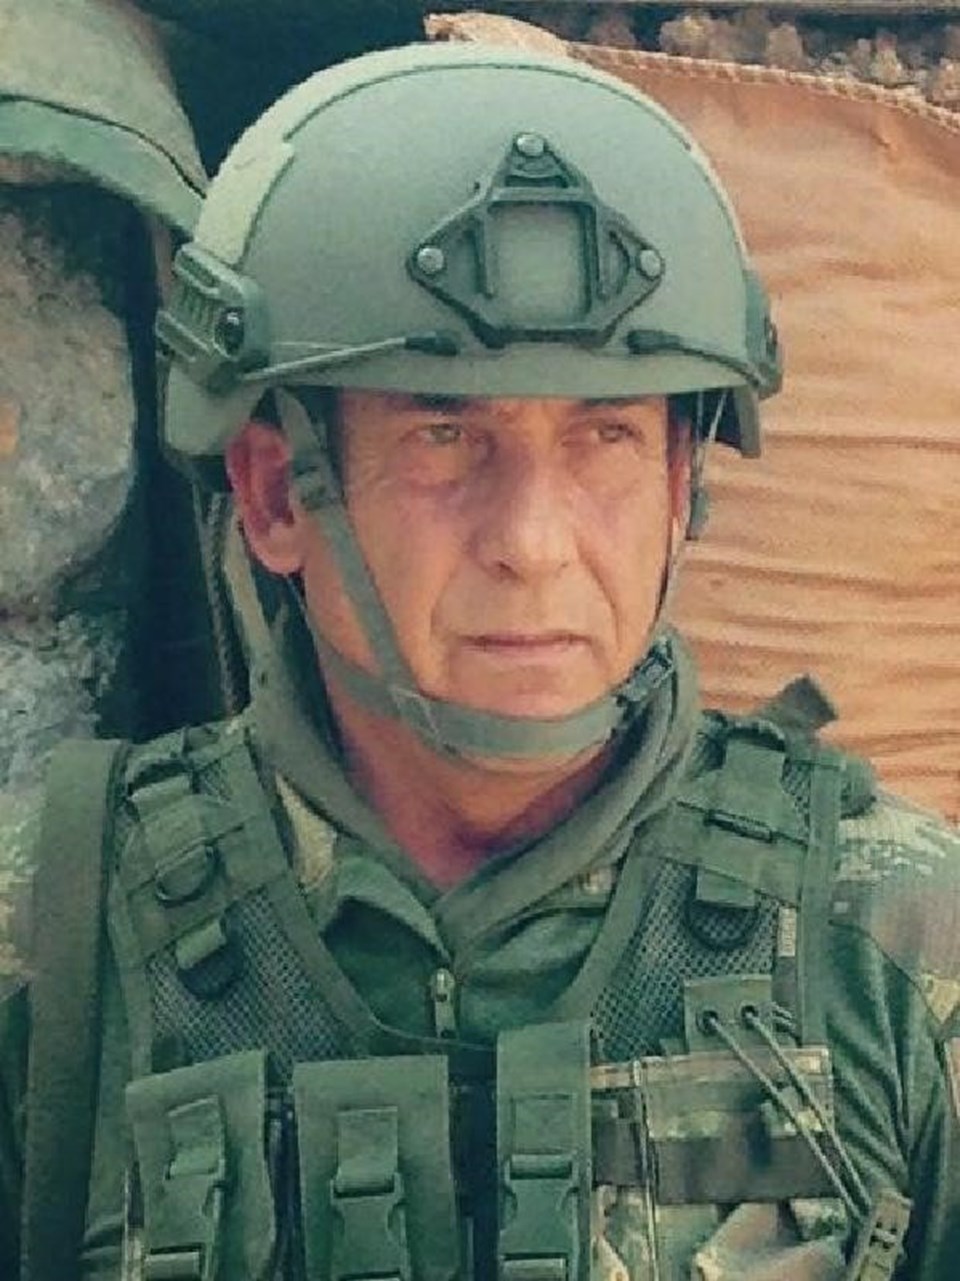 Tuğgeneral Semih Okyar, terfi öncesi İzmir Bornova Komando Tugayı'nda Albay olarak görev yapıyordu.
